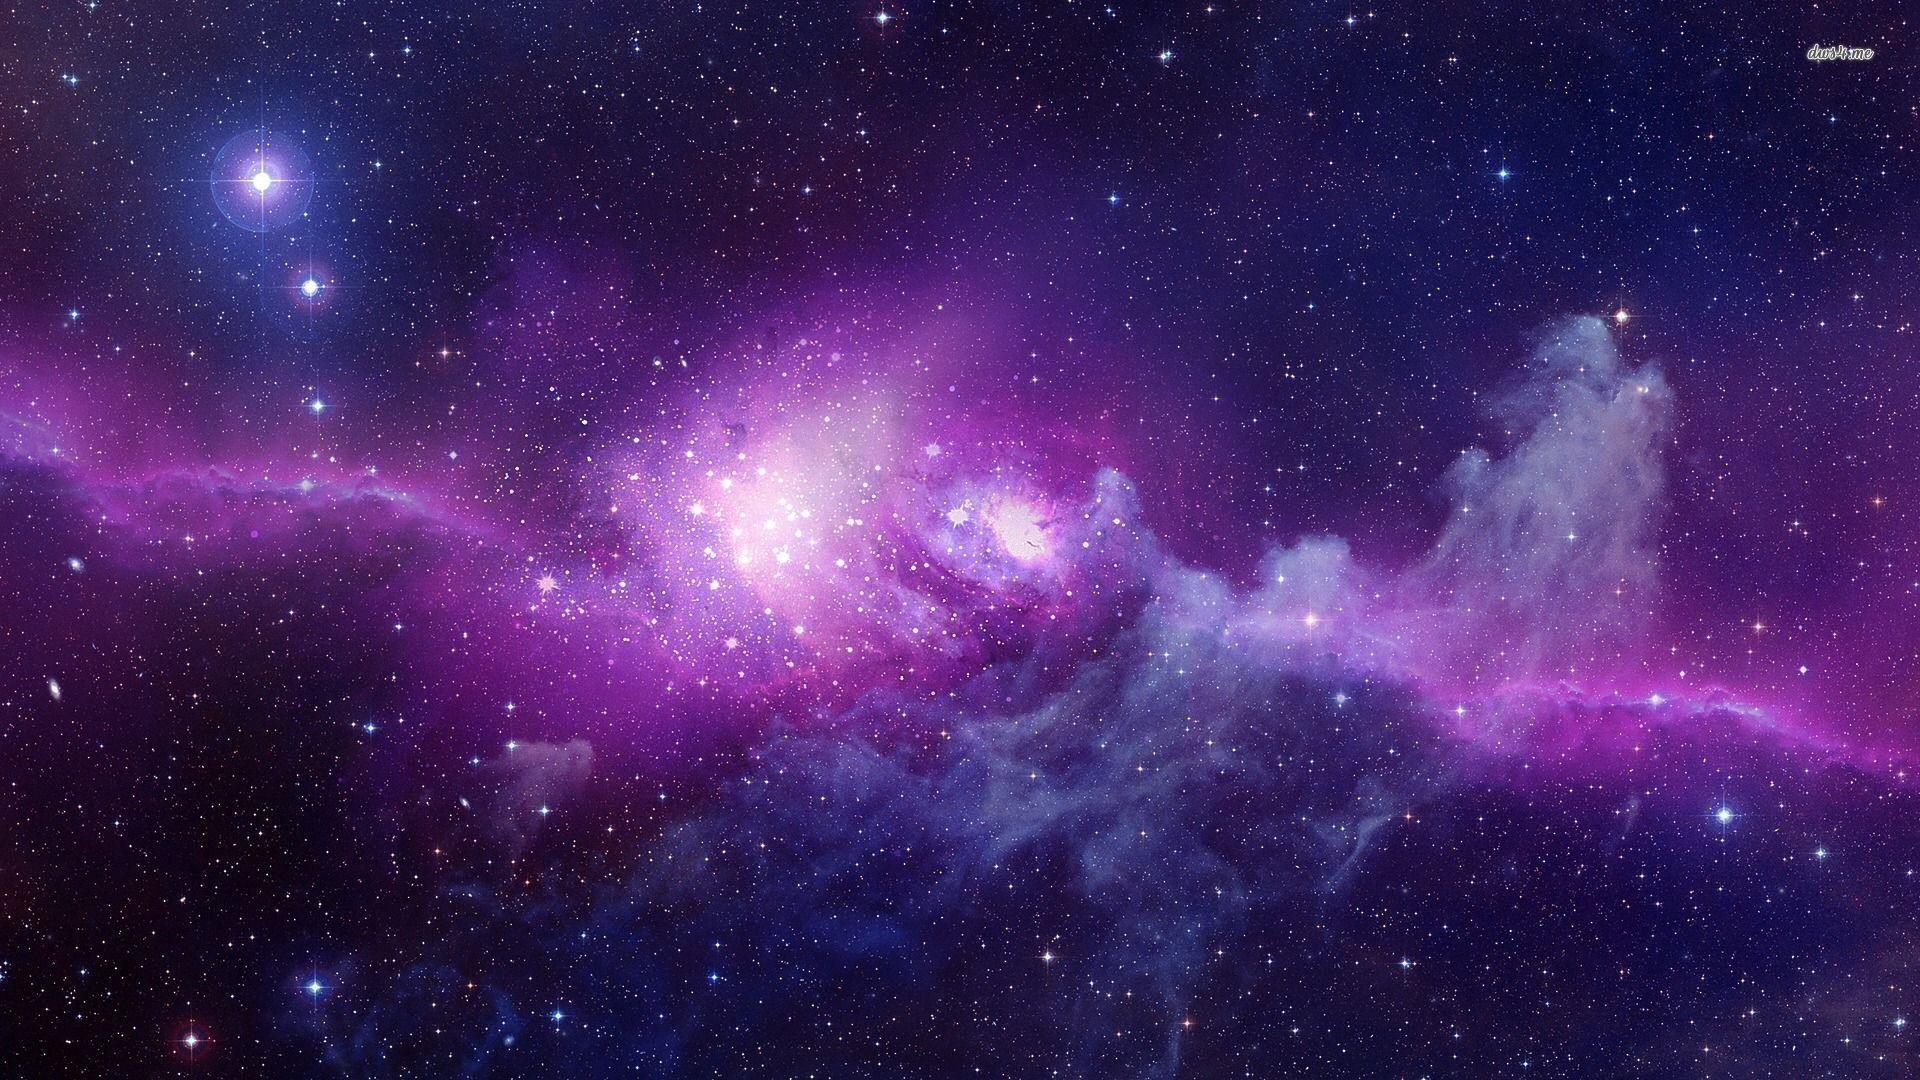 Vào không gian đầy bí ẩn và huyền bí của thiên hà trong hình ảnh này. Tìm kiếm những điều kỳ diệu và cảm nhận sự vô tận của vũ trụ.